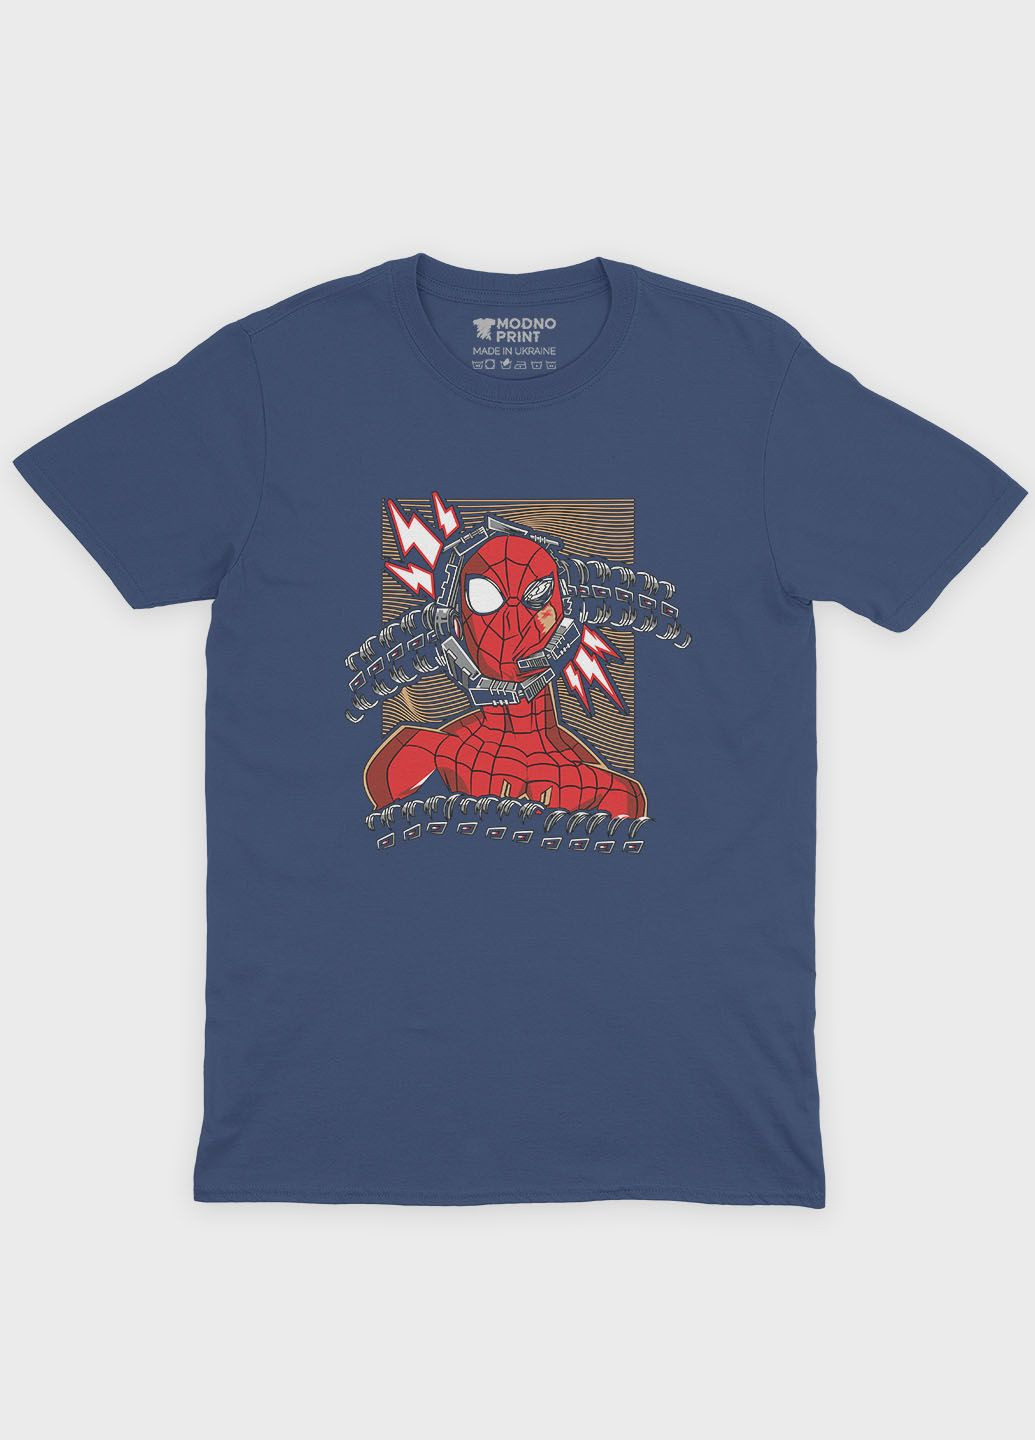 Темно-синяя демисезонная футболка для мальчика с принтом супергероя - человек-паук (ts001-1-nav-006-014-013-b) Modno